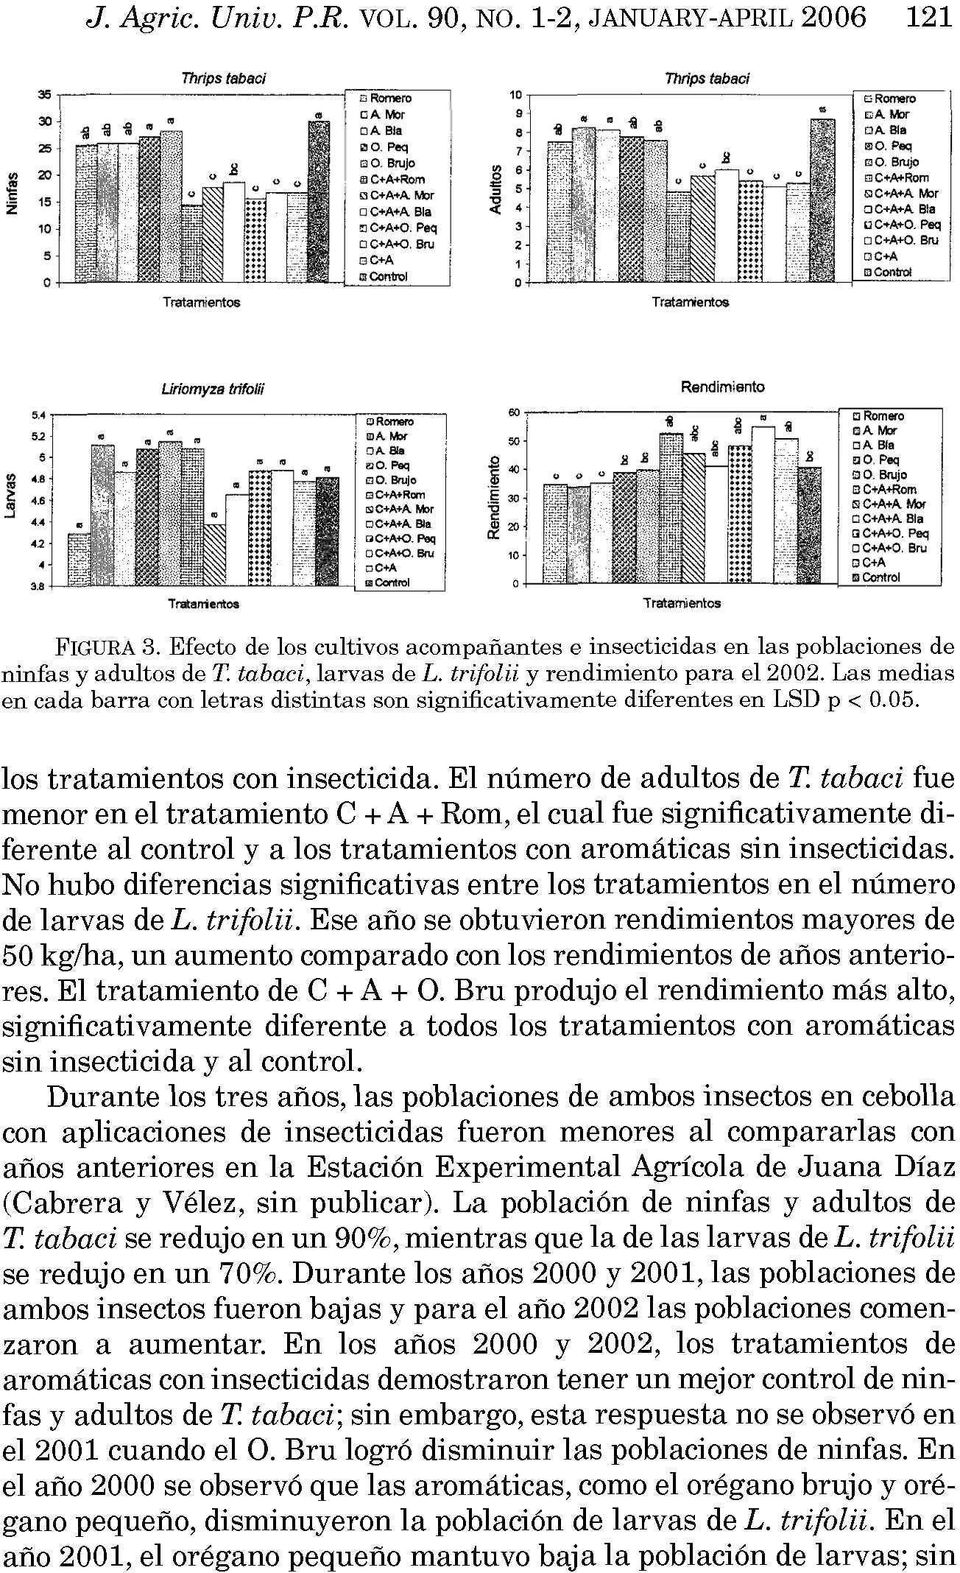 trifolii y rendimiento para el 2002. Las medias en cada barra con letras distintas son significativamente diferentes en LSD p < 0.05. los tratamientos con insecticida. El número de adultos de T.